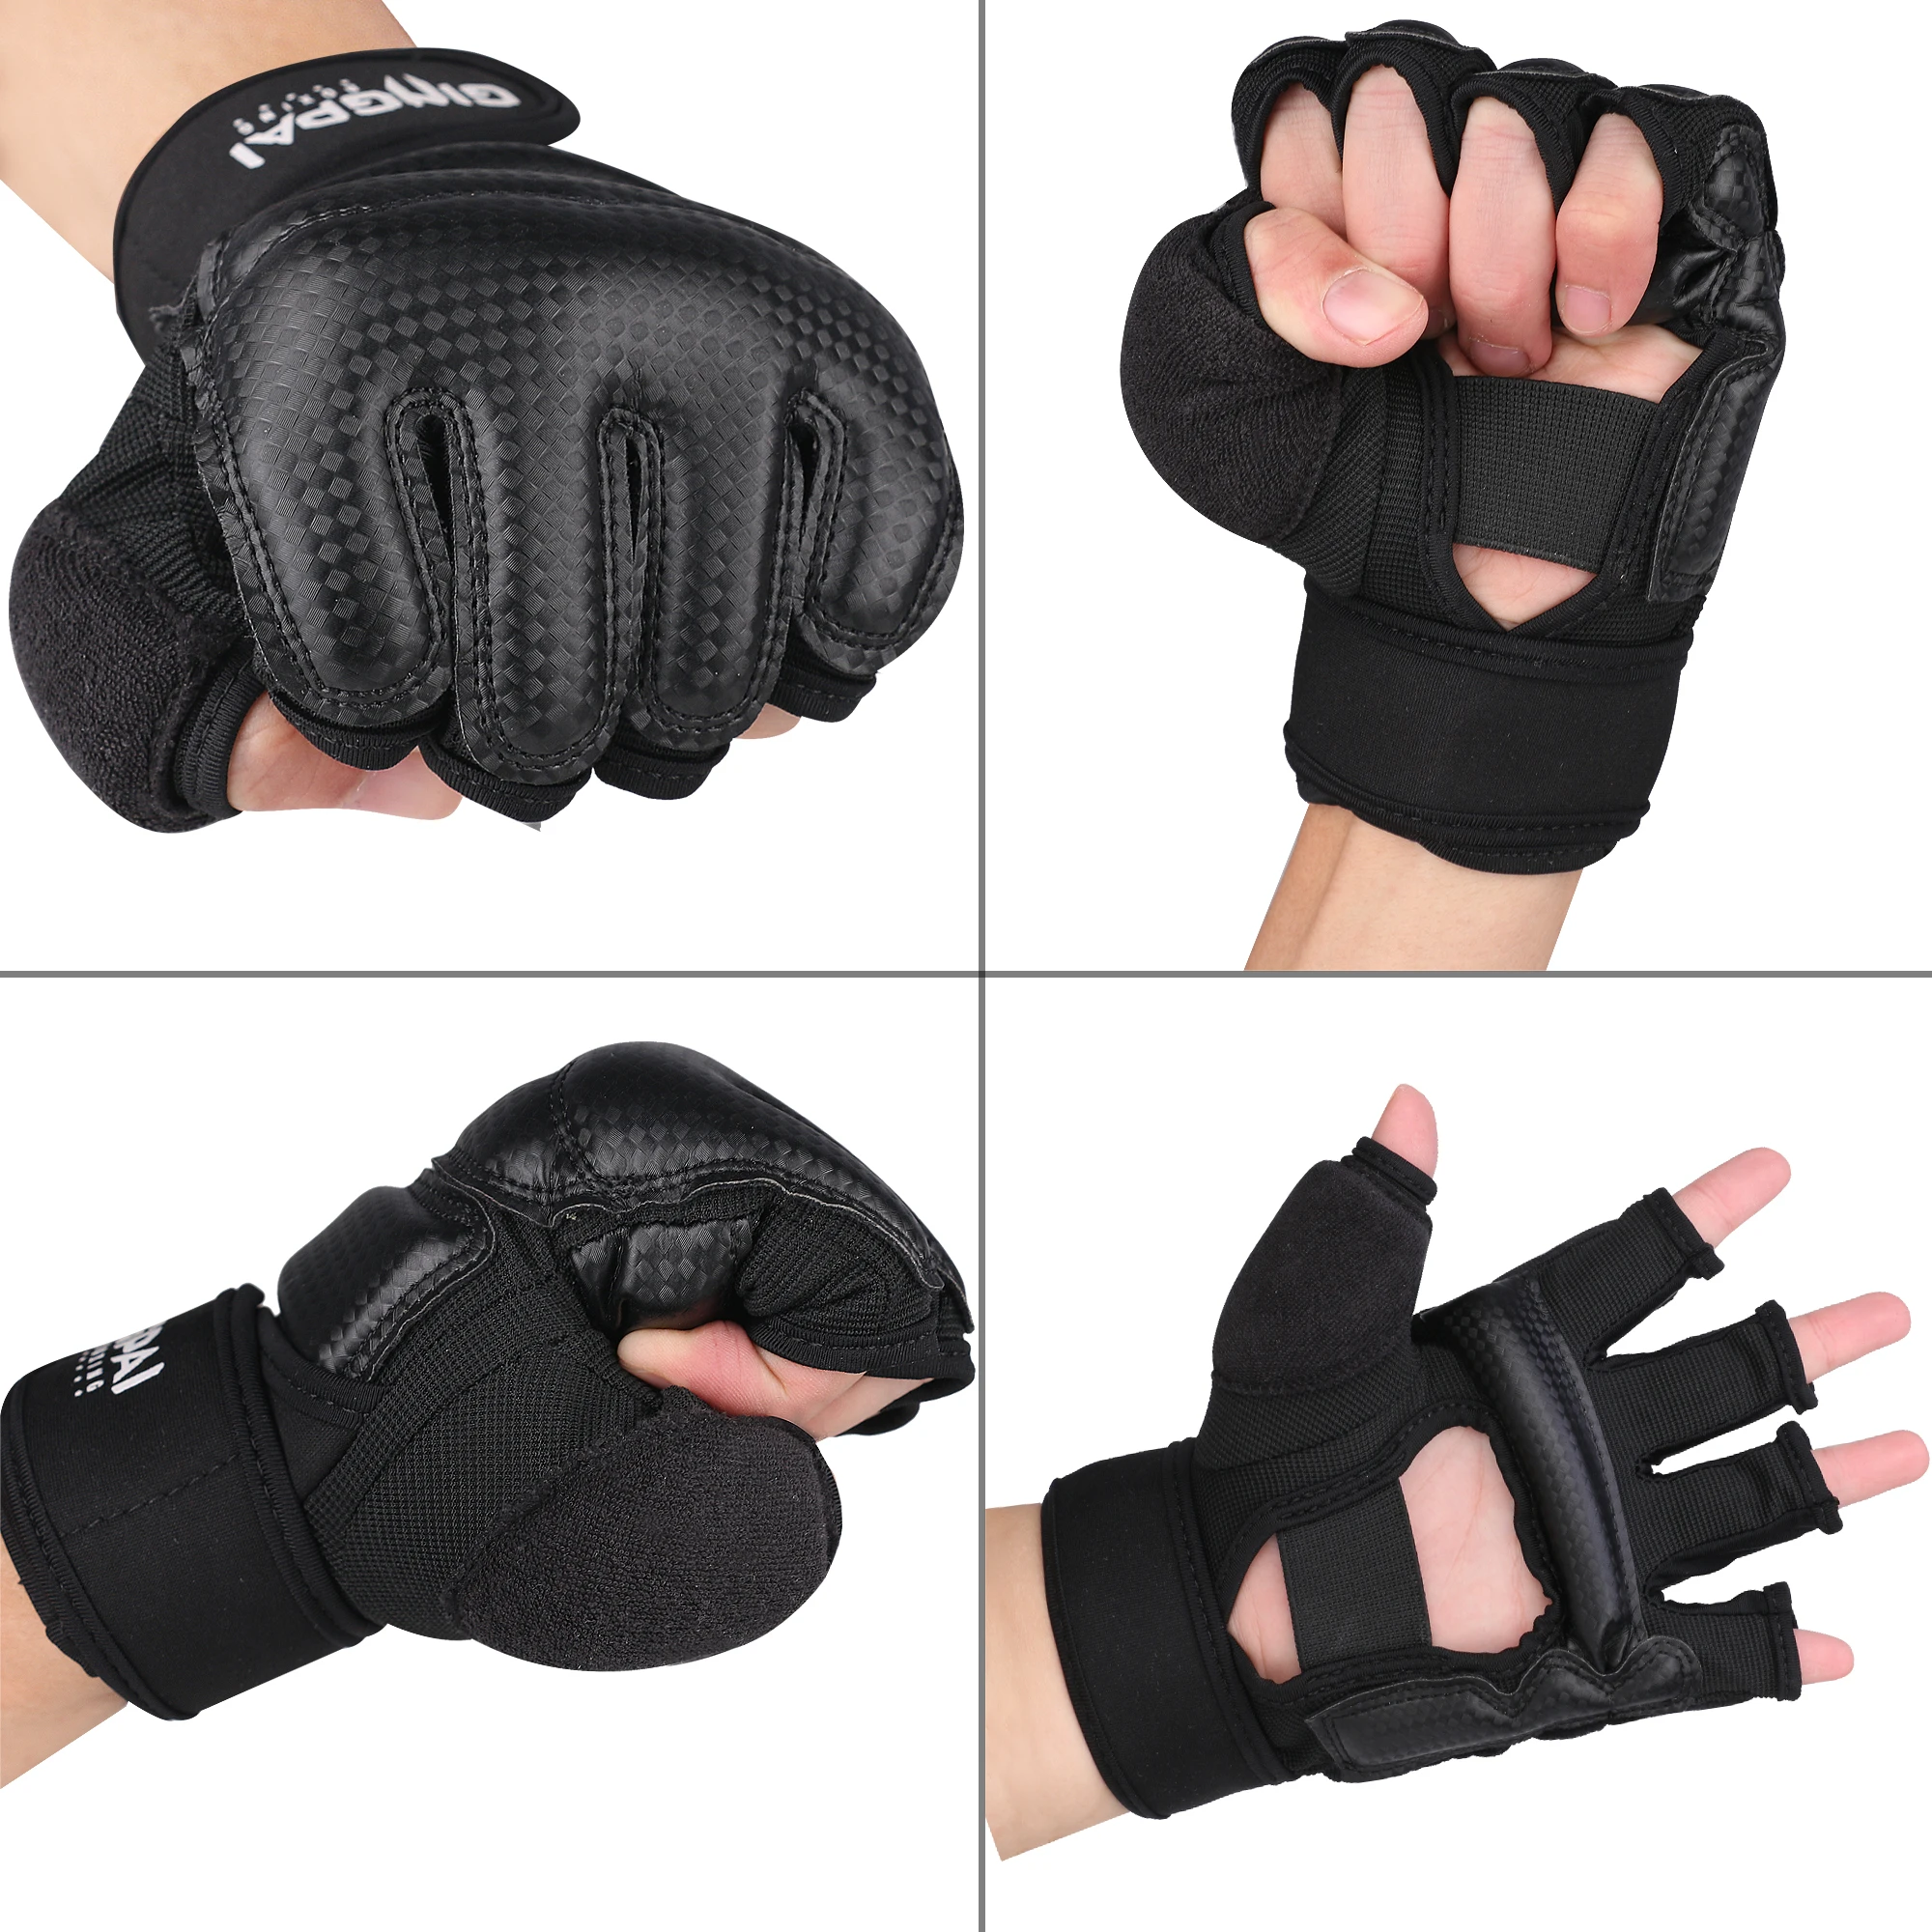 

GINGPAI Taekwondo Karate Gloves for Sparring Martial Arts, Half Finger Training Gloves for Men Women Kids